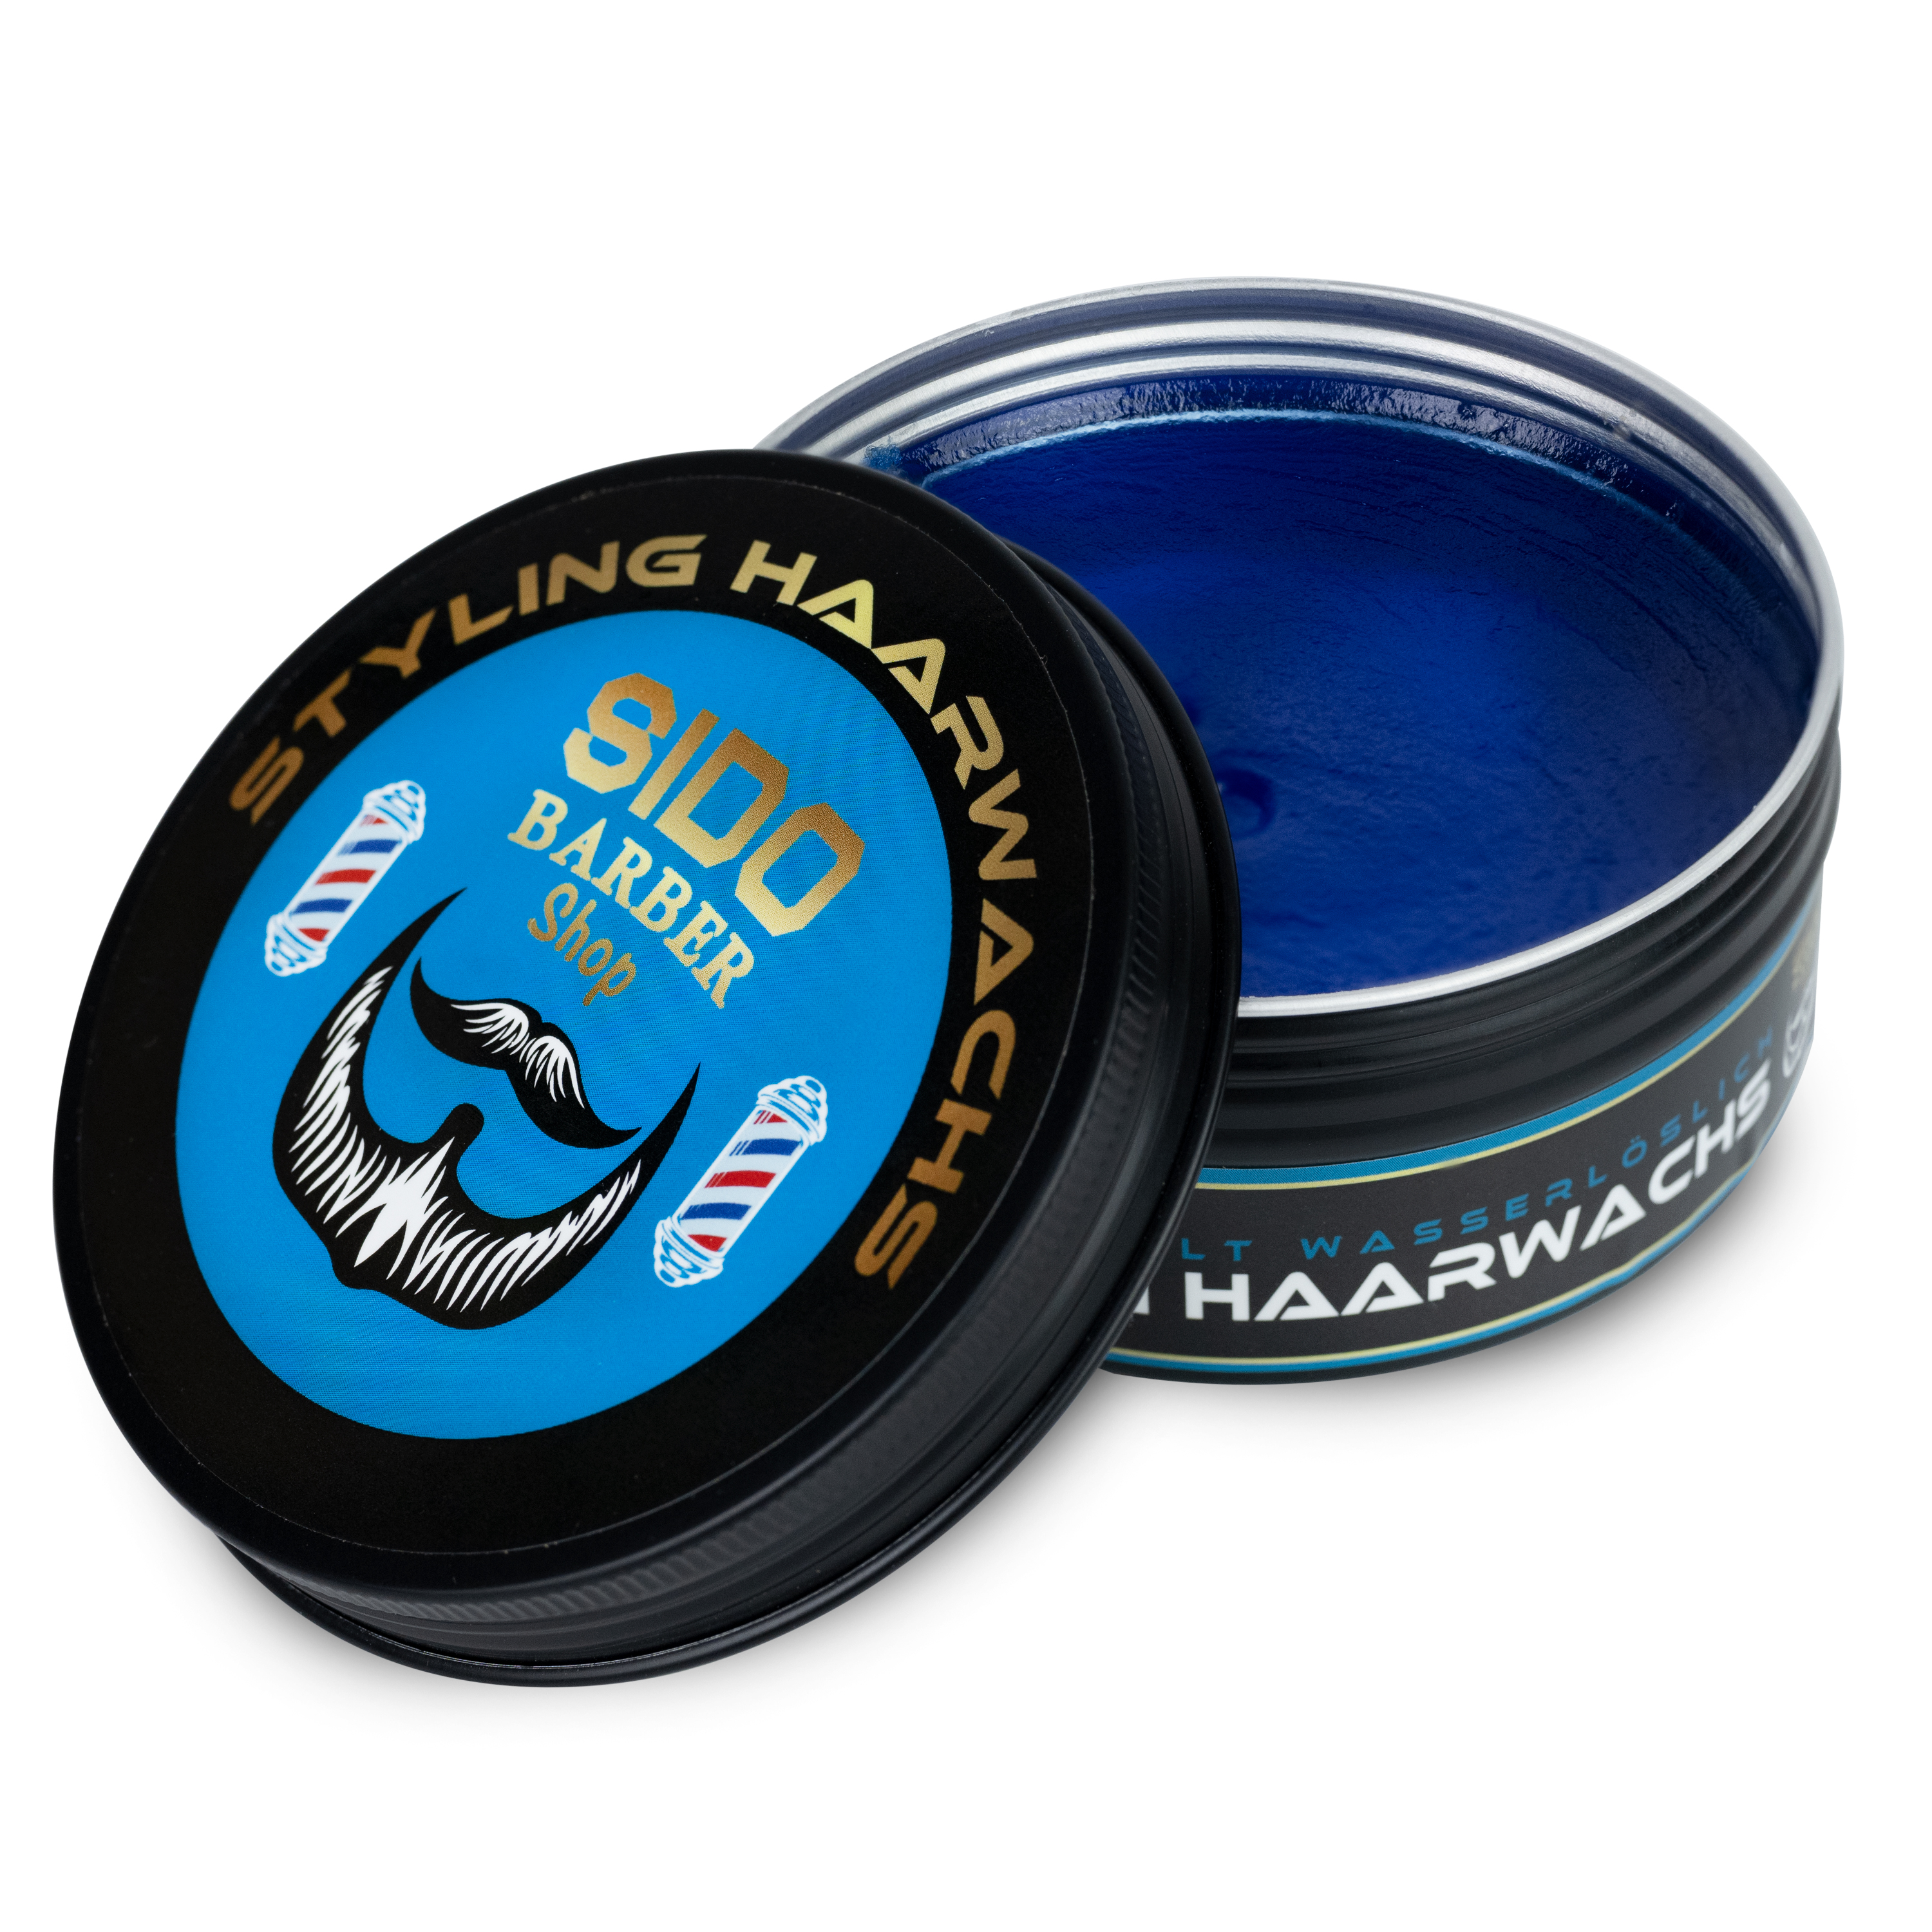 SIDO BARBER Shop Haarwachs Männer (Blau) Friseur Haar Wachs für starken Halt - Hair Wax für Herren ohne Schmieren, Kleben & Rückstände